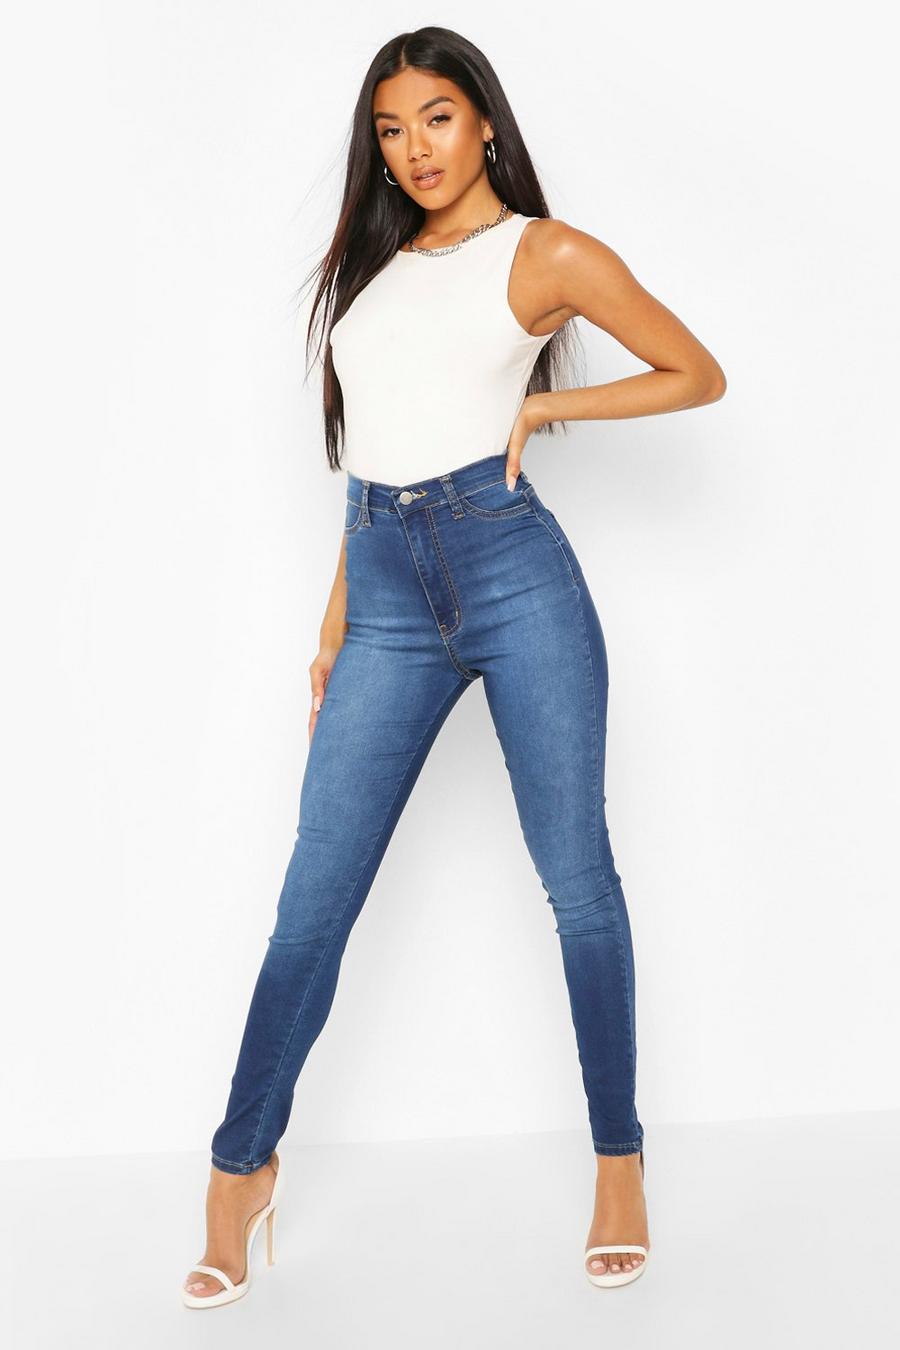 https://media.boohoo.com/i/boohoo/dzz06284_mid%20blue_xl/female-mid%20blue-super-high-waist-power-stretch-skinny-jeans/?w=900&qlt=default&fmt.jp2.qlt=70&fmt=auto&sm=fit